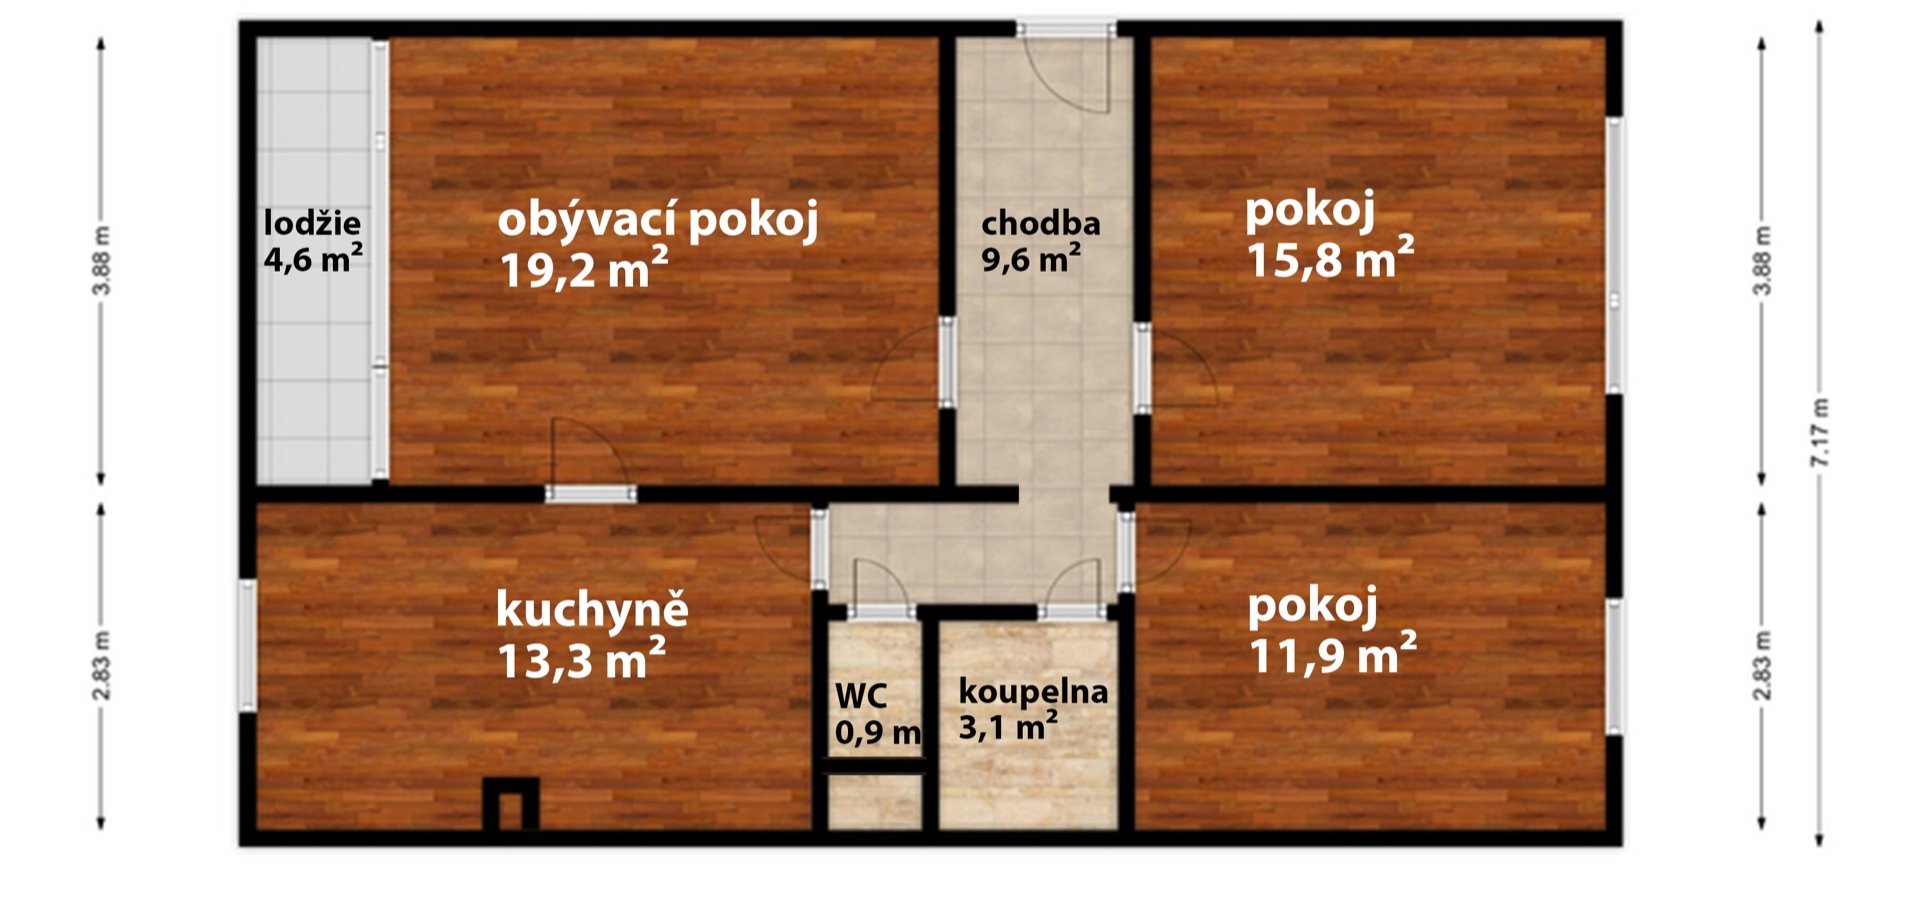 Prodej bytu 3+1 s lodžií a sklepem, 74 m², Praha 4 - Michle